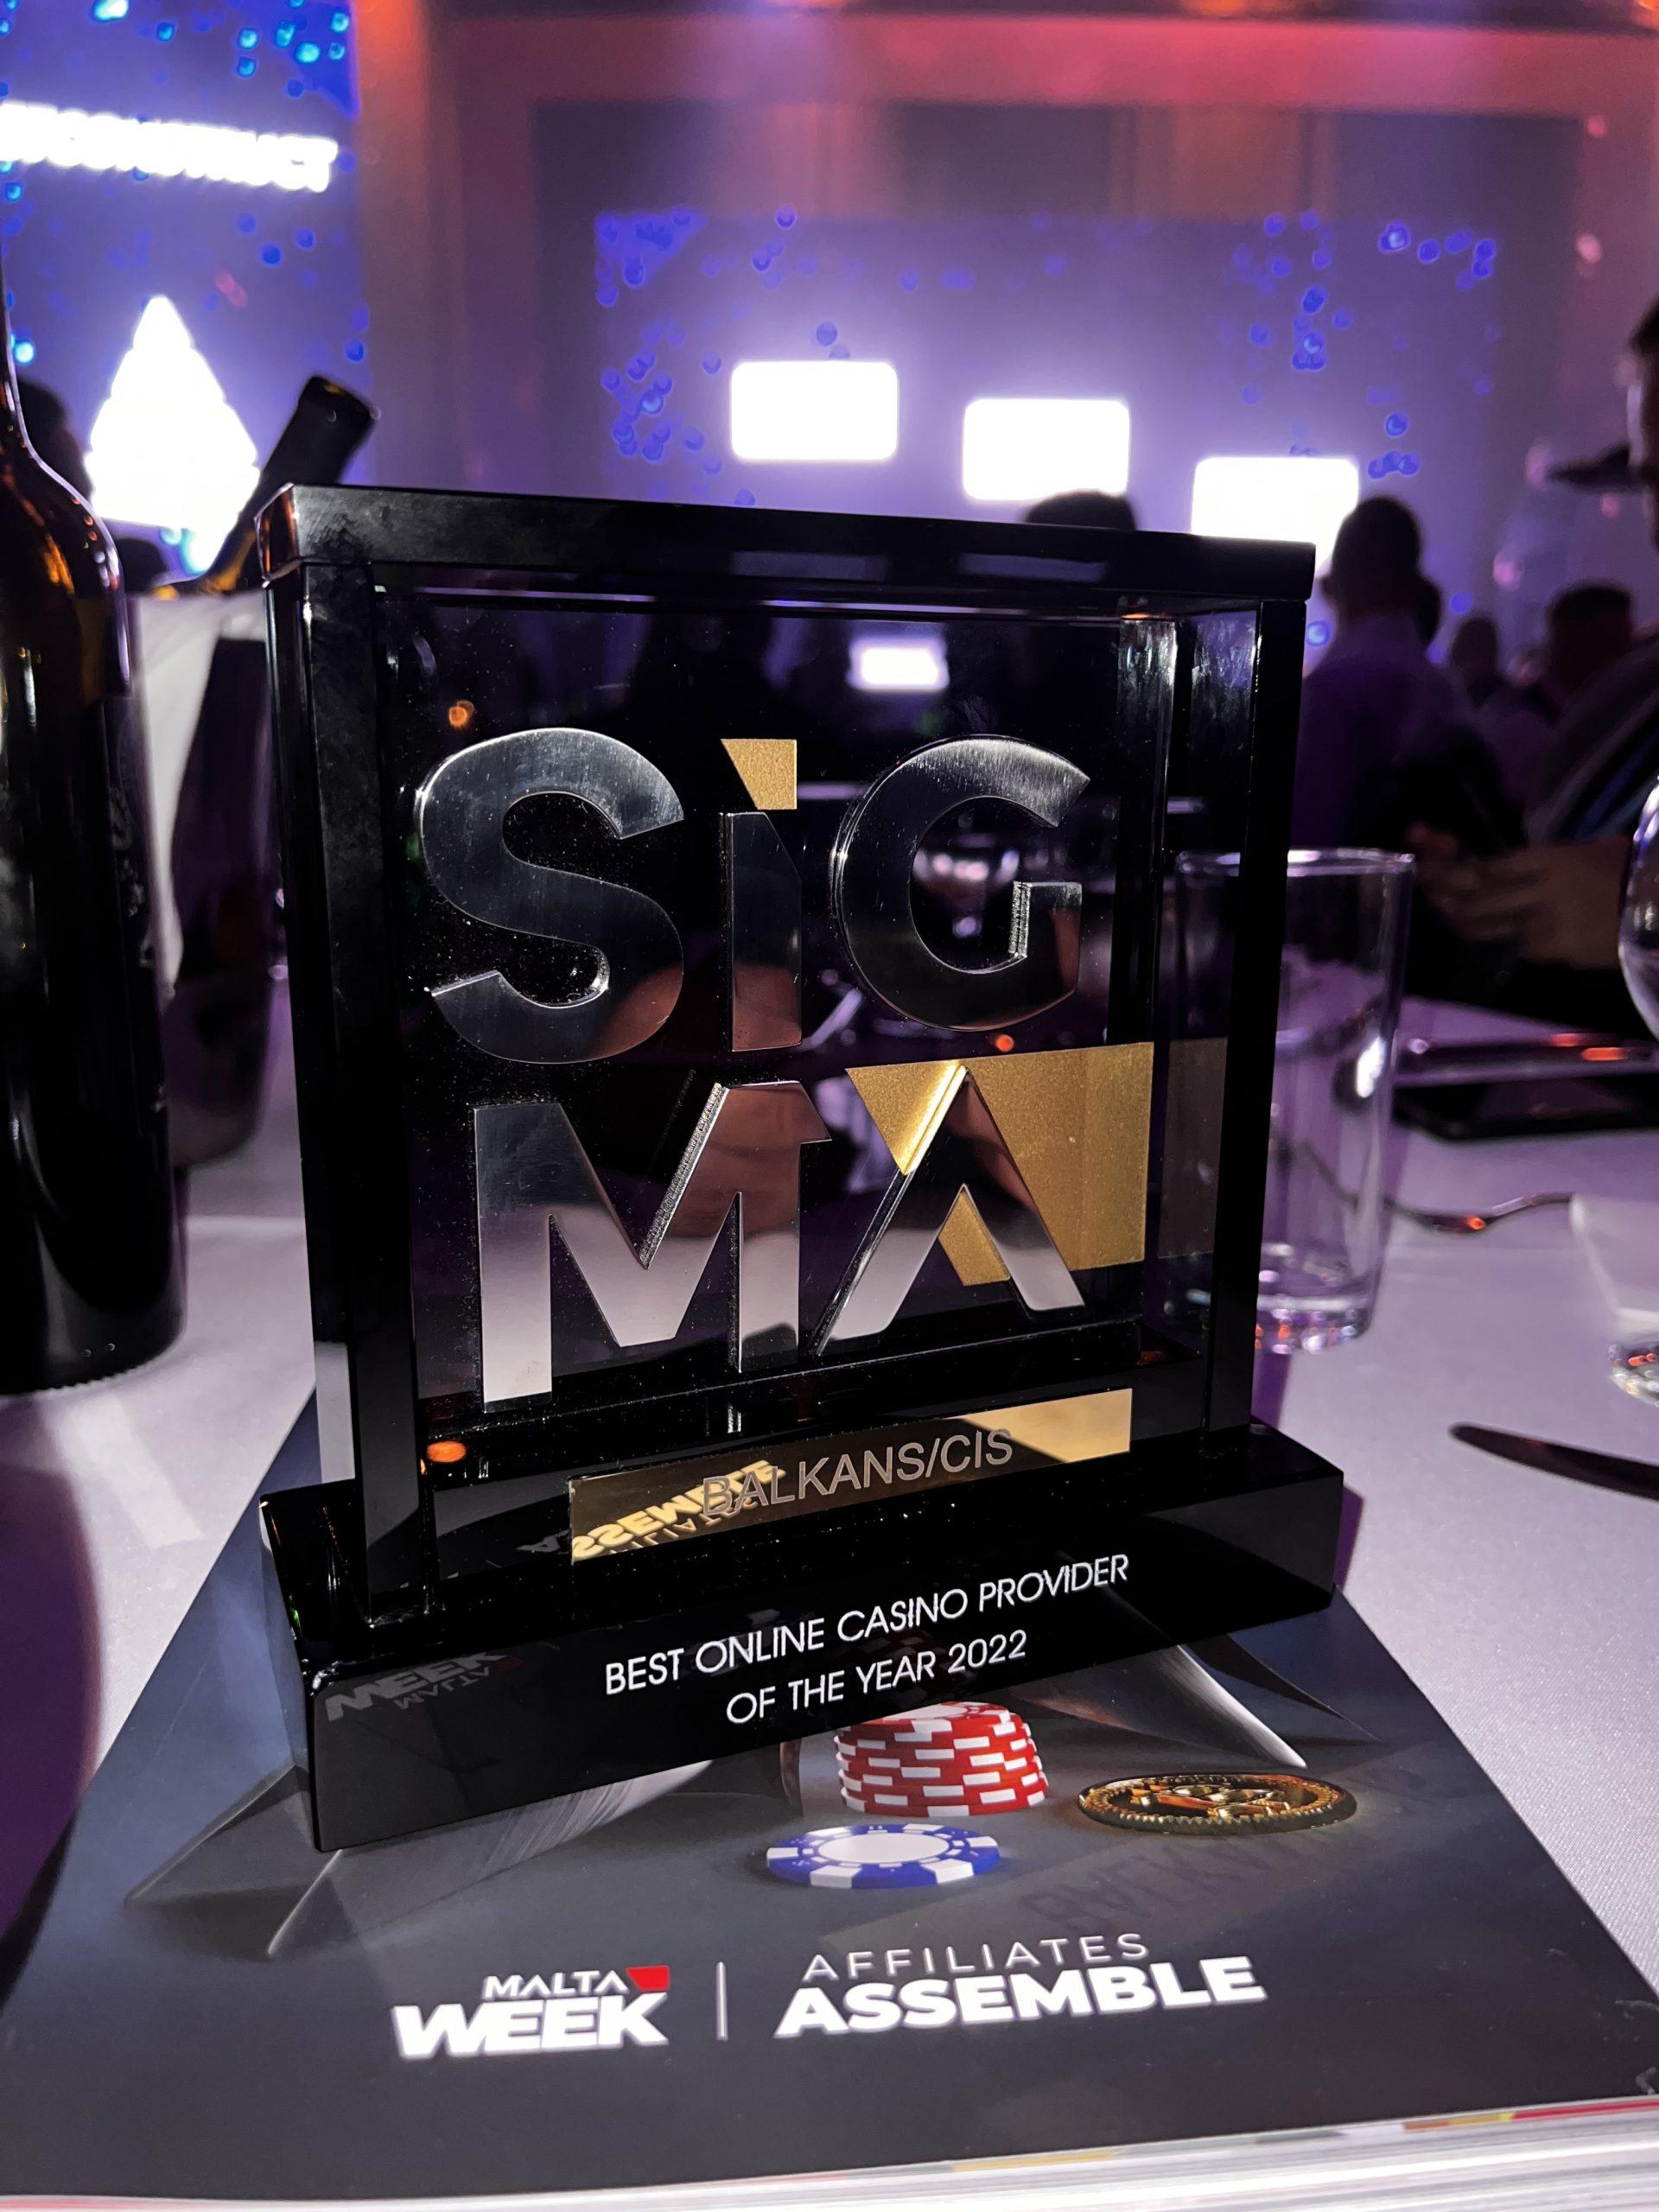 Sigma Balkans/CIS Award 2022 SoftGamings